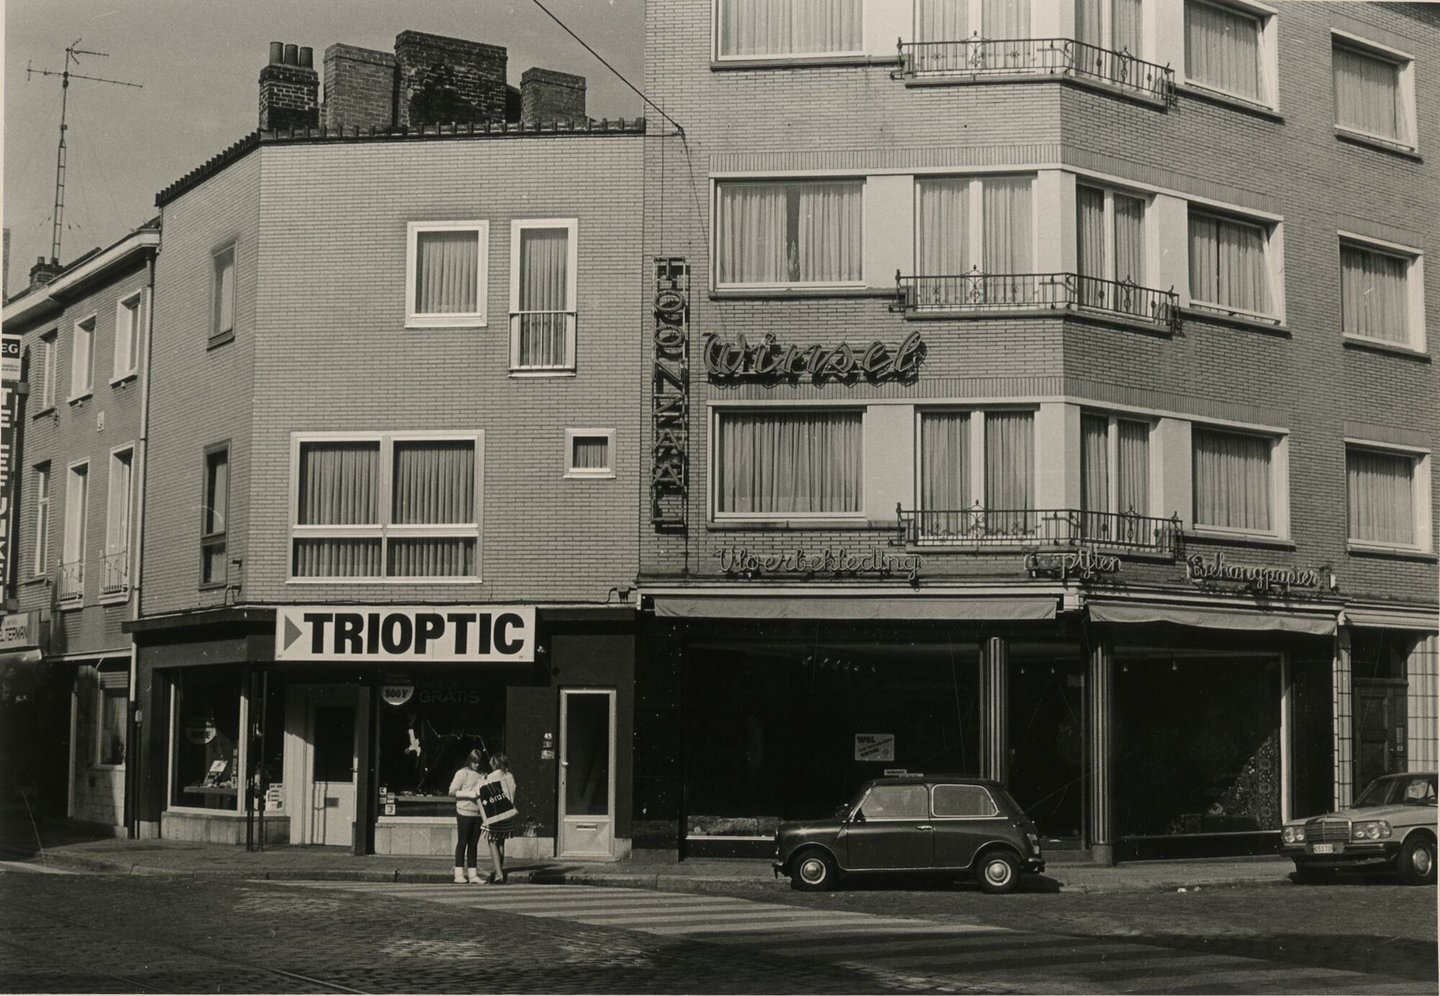 Etalage van optiek Trioptic en Winsel vloerbekleding in Gent Winsel werd in 1875 opgericht door Edouard Winsel. De kleine winkel bood in het begin enkel behangpapier aan. In de jaren tachtig kwamen daar gordijnen, verf en vloerbekleding bij.